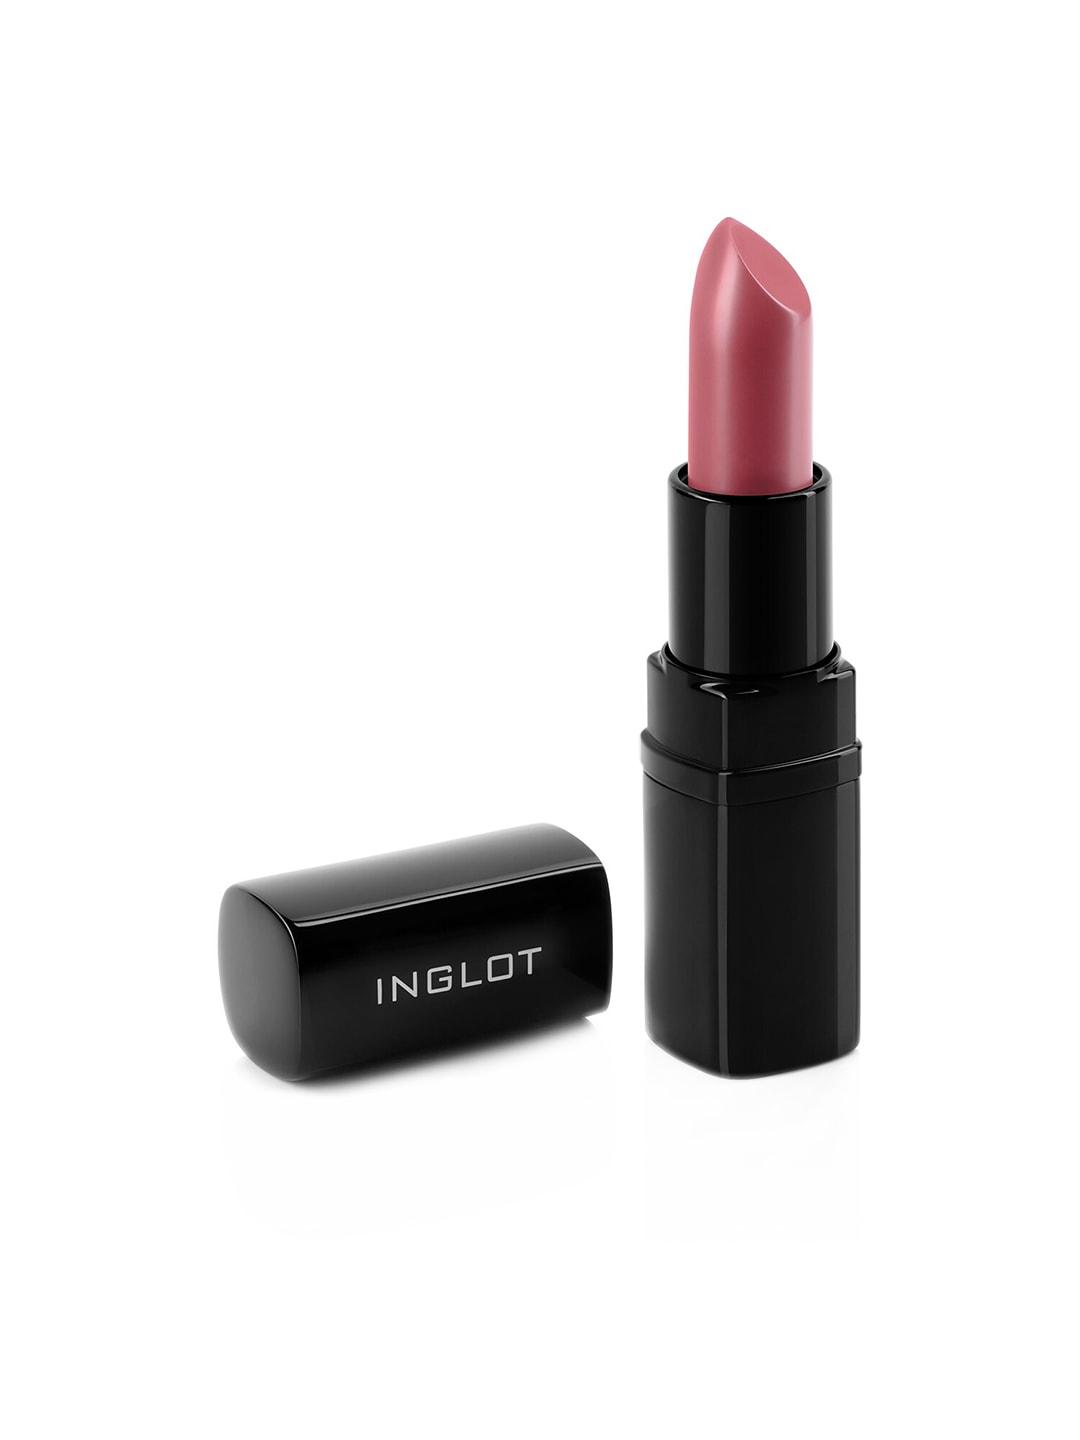 inglot-long-wearing-matte-lipstick-4.5-g---shade-417